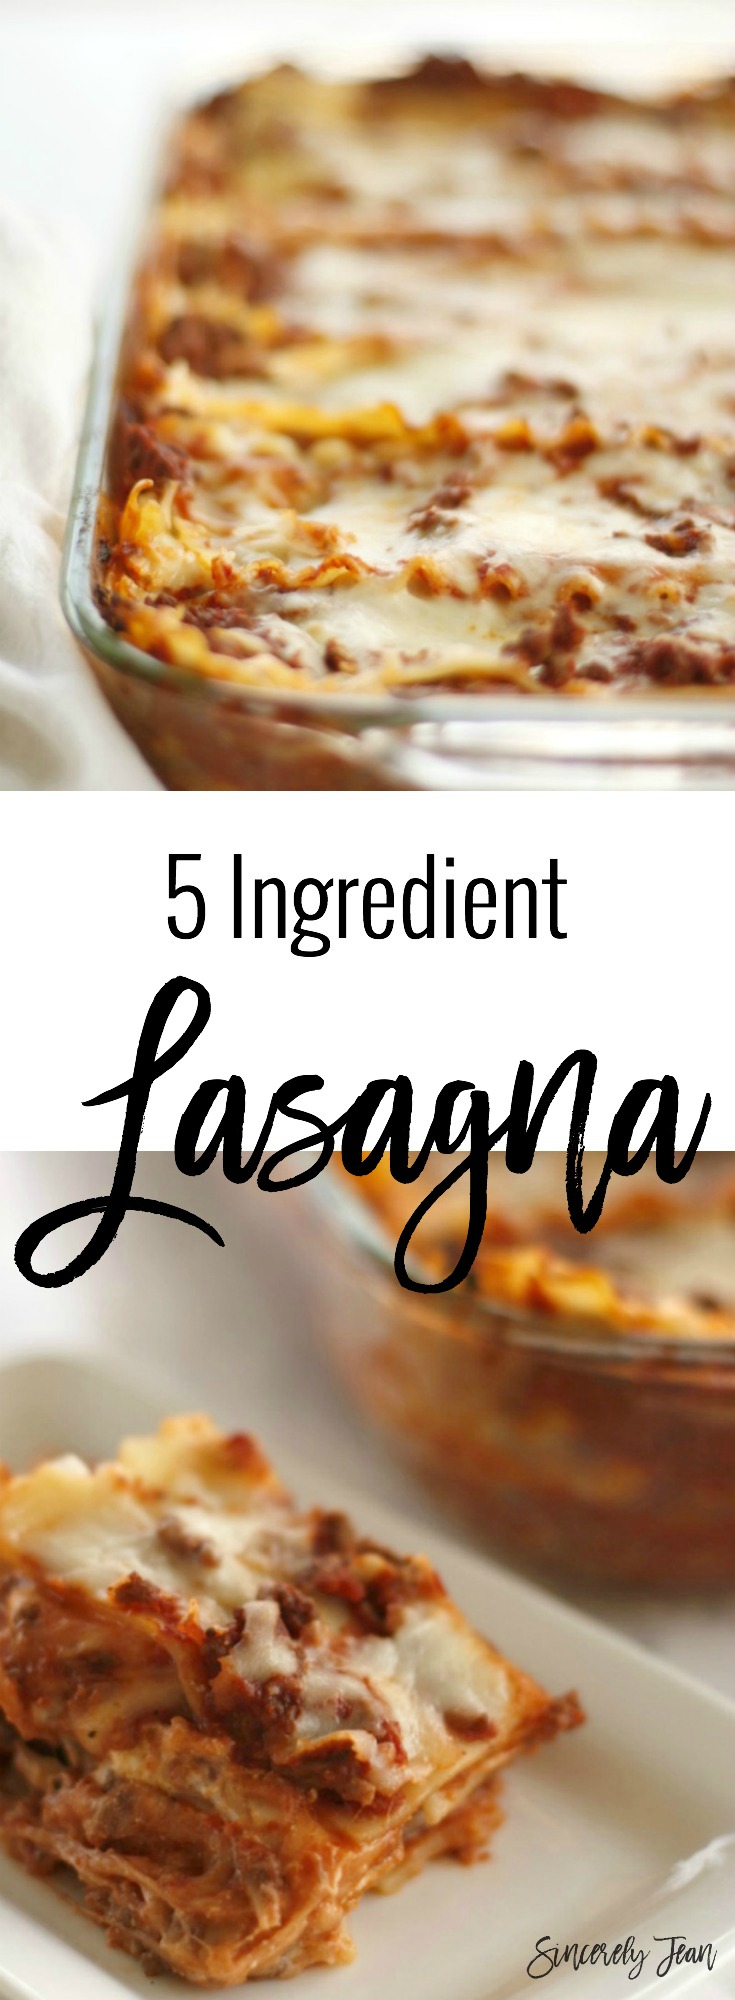 SincerelyJean.com 5 ingredient recipes - Easy Lasagna!